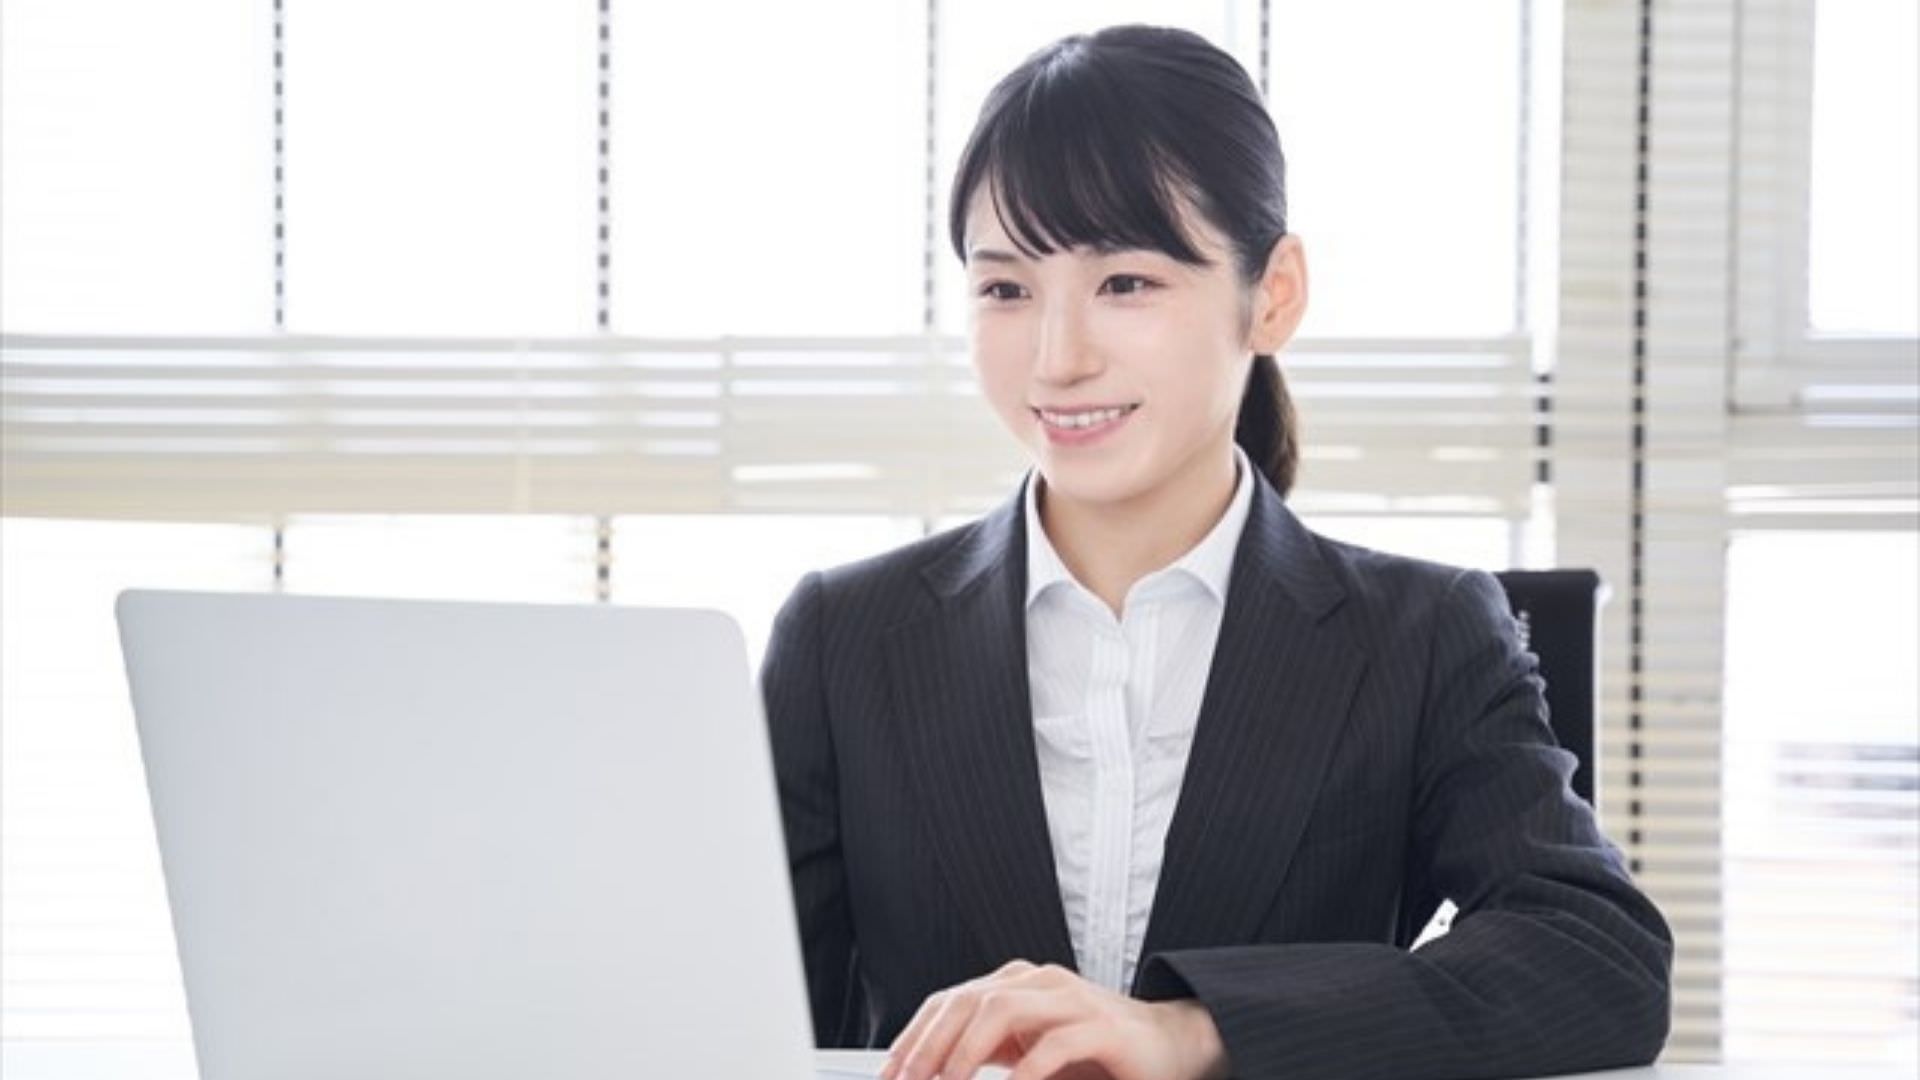 女性におすすめの転職サイト・エージェント【他人よりも得する使い方】 KENMORI 転職